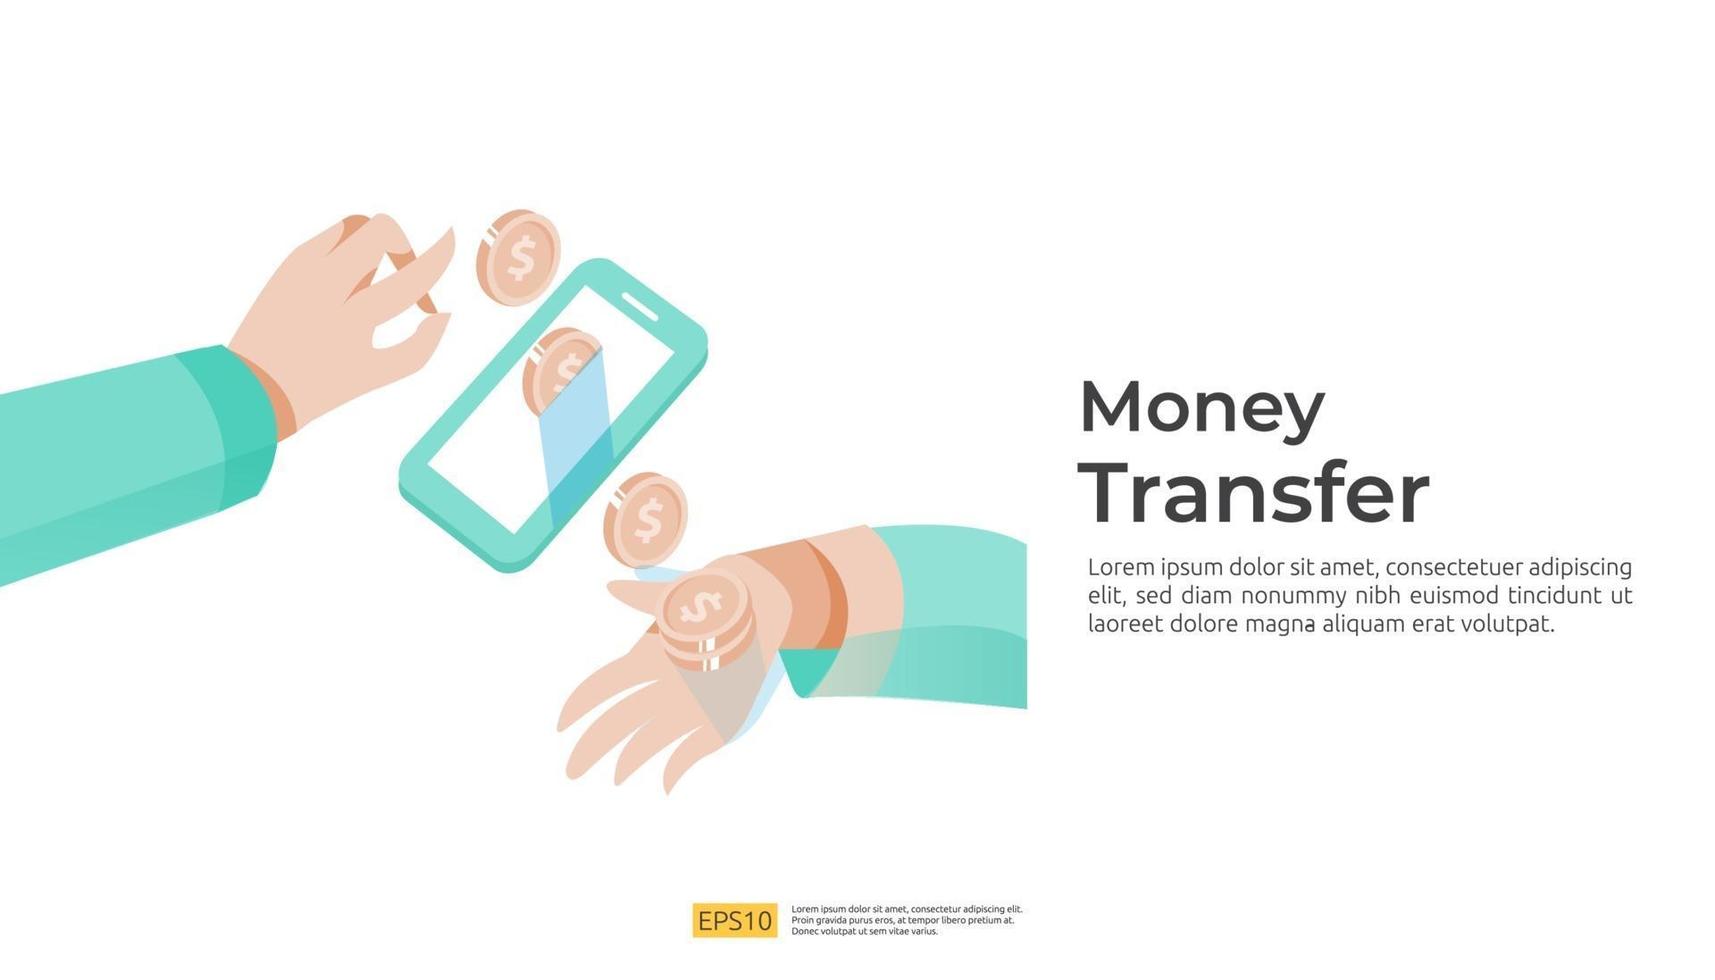 pengar överföring koncept eller online mobil betalning med människor karaktär vektor